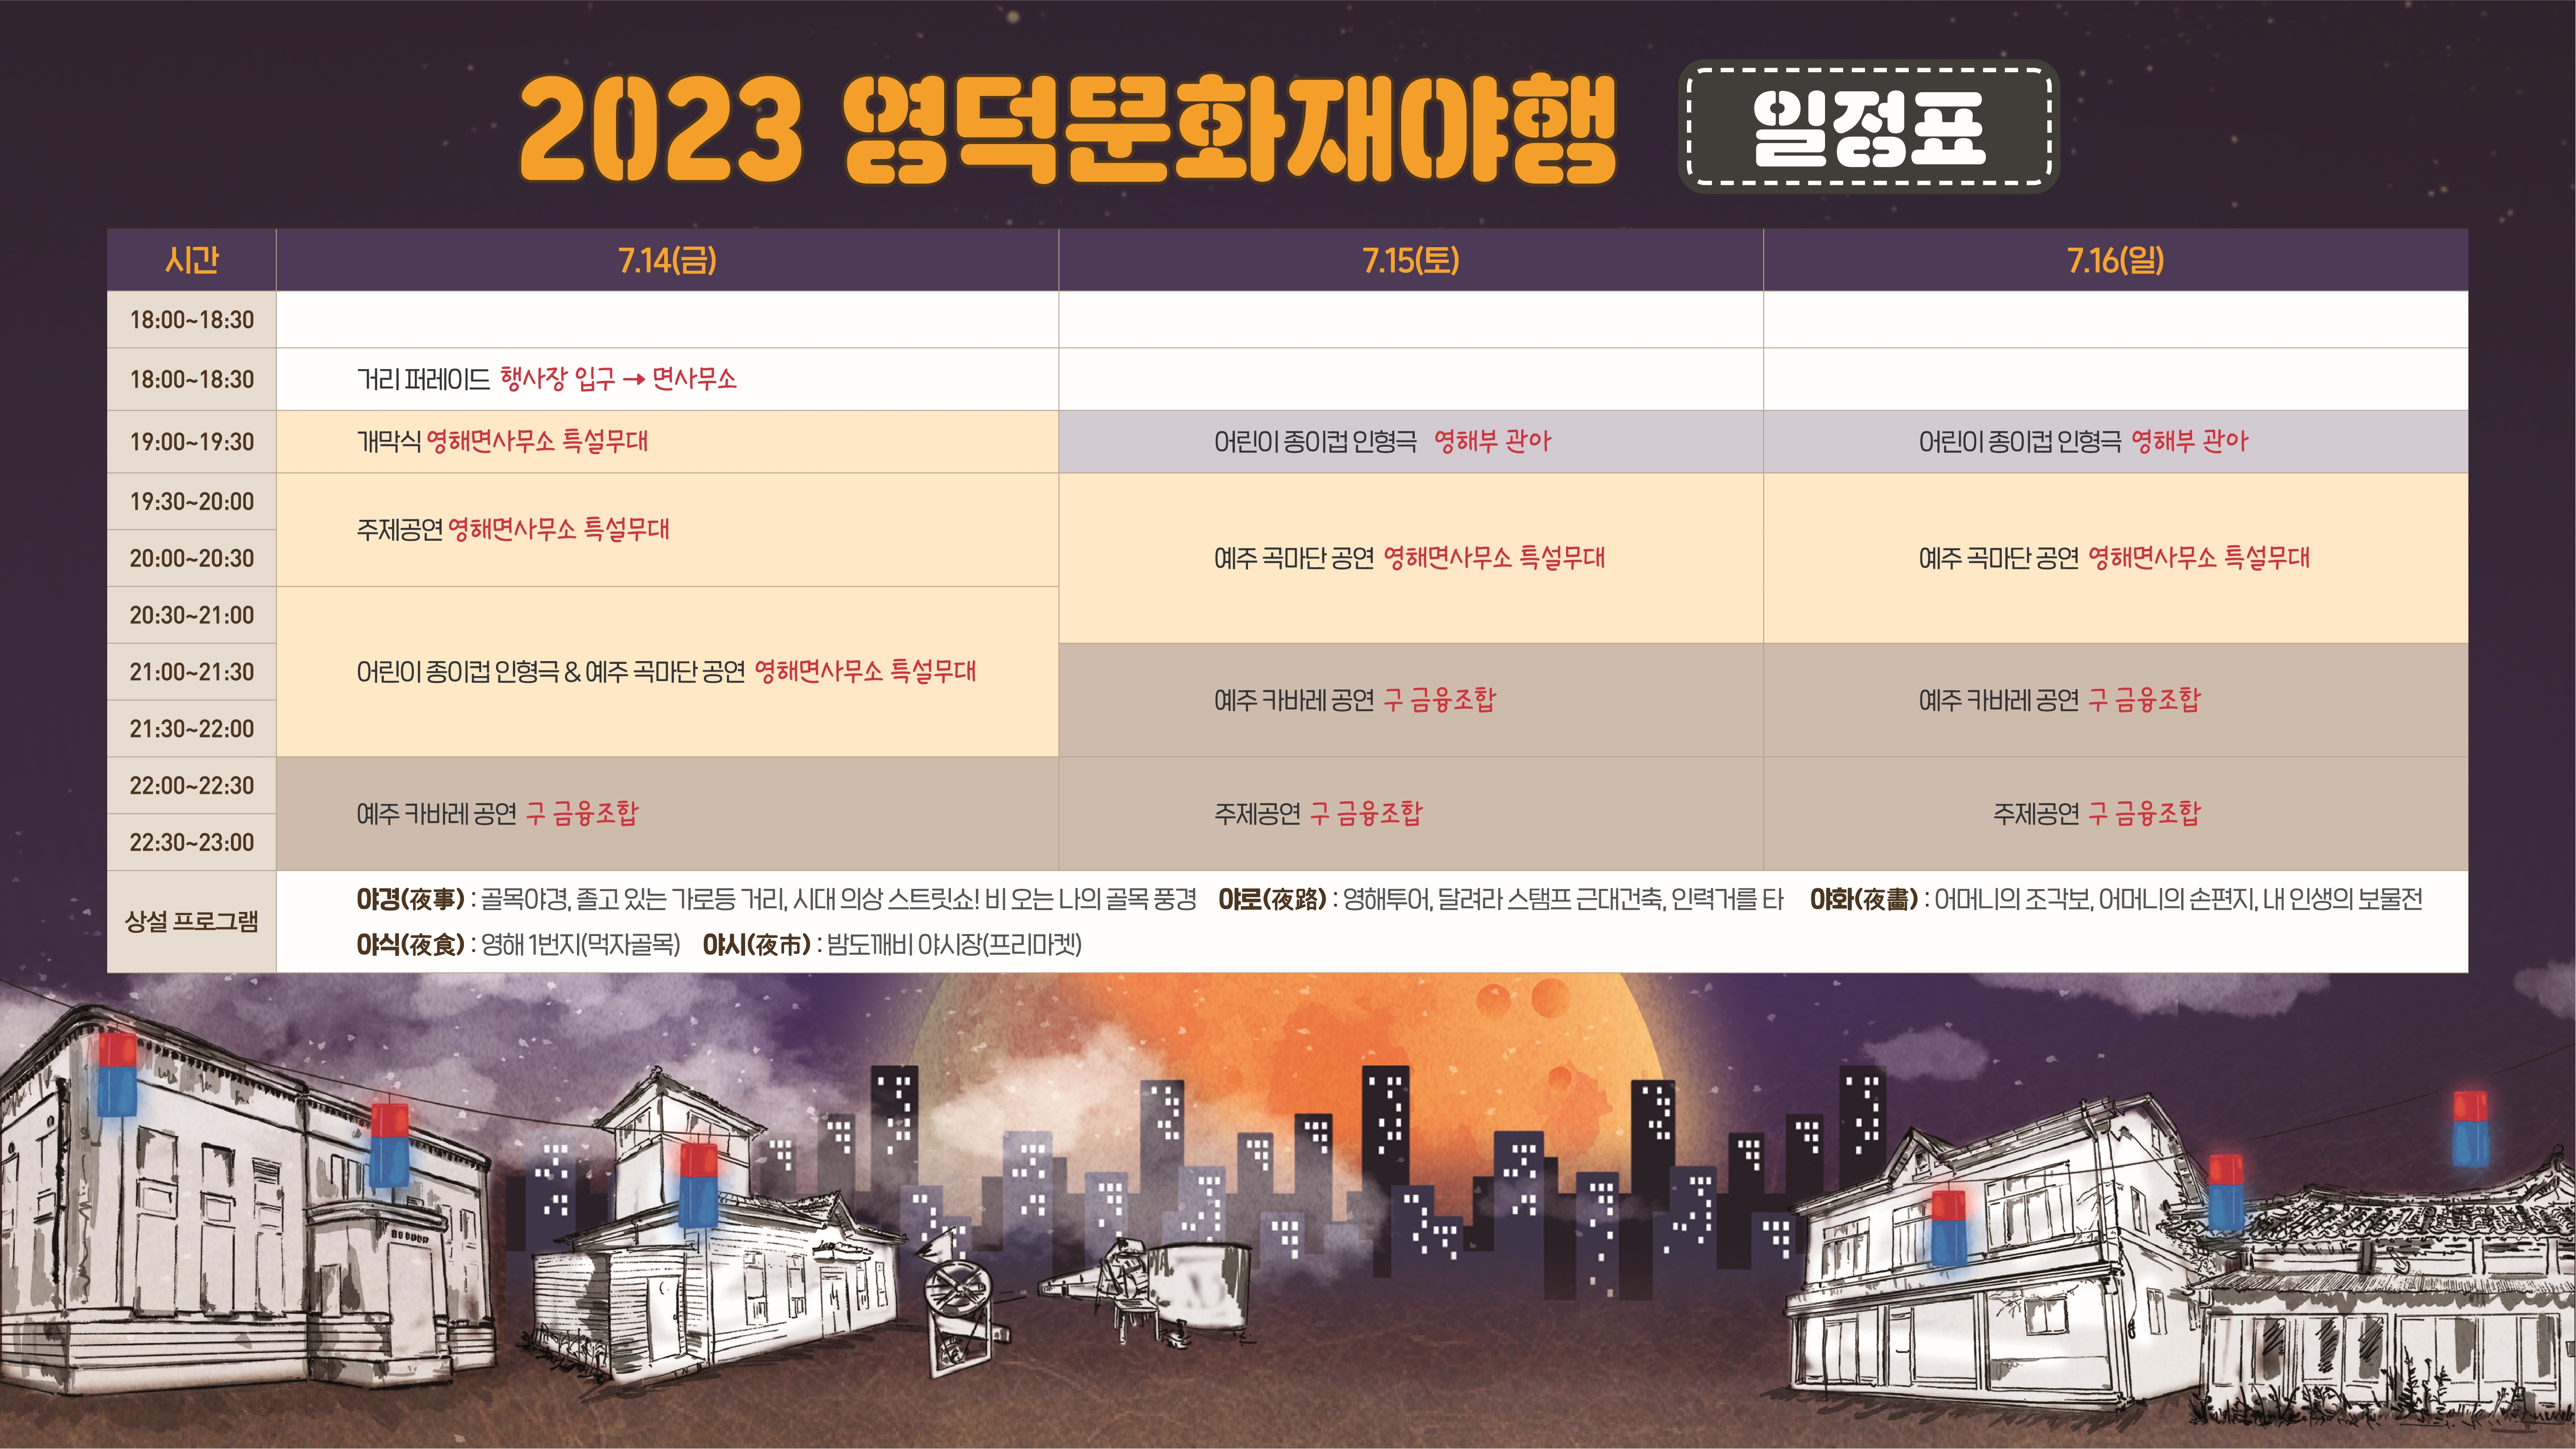 2023 영덕문화재야행  “예주 곡마단 & 예주 카바레” 공연 모집1